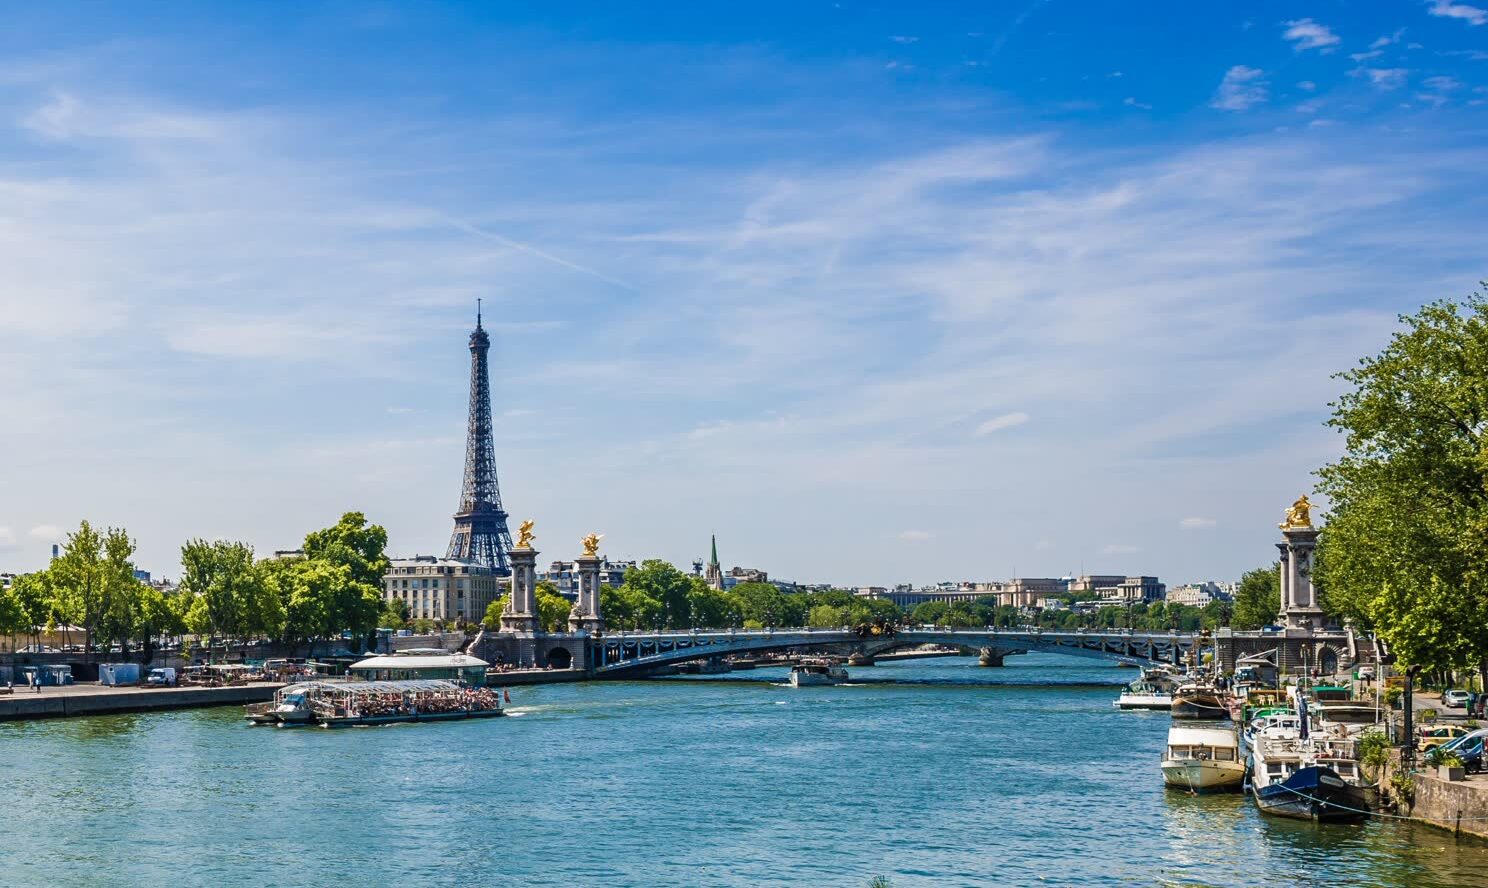 Excursion en croisière sur la Seine proposé par JVO Voyage, votre agence de voyages en groupe par excellence : découverte des Quais de la Seine à Paris